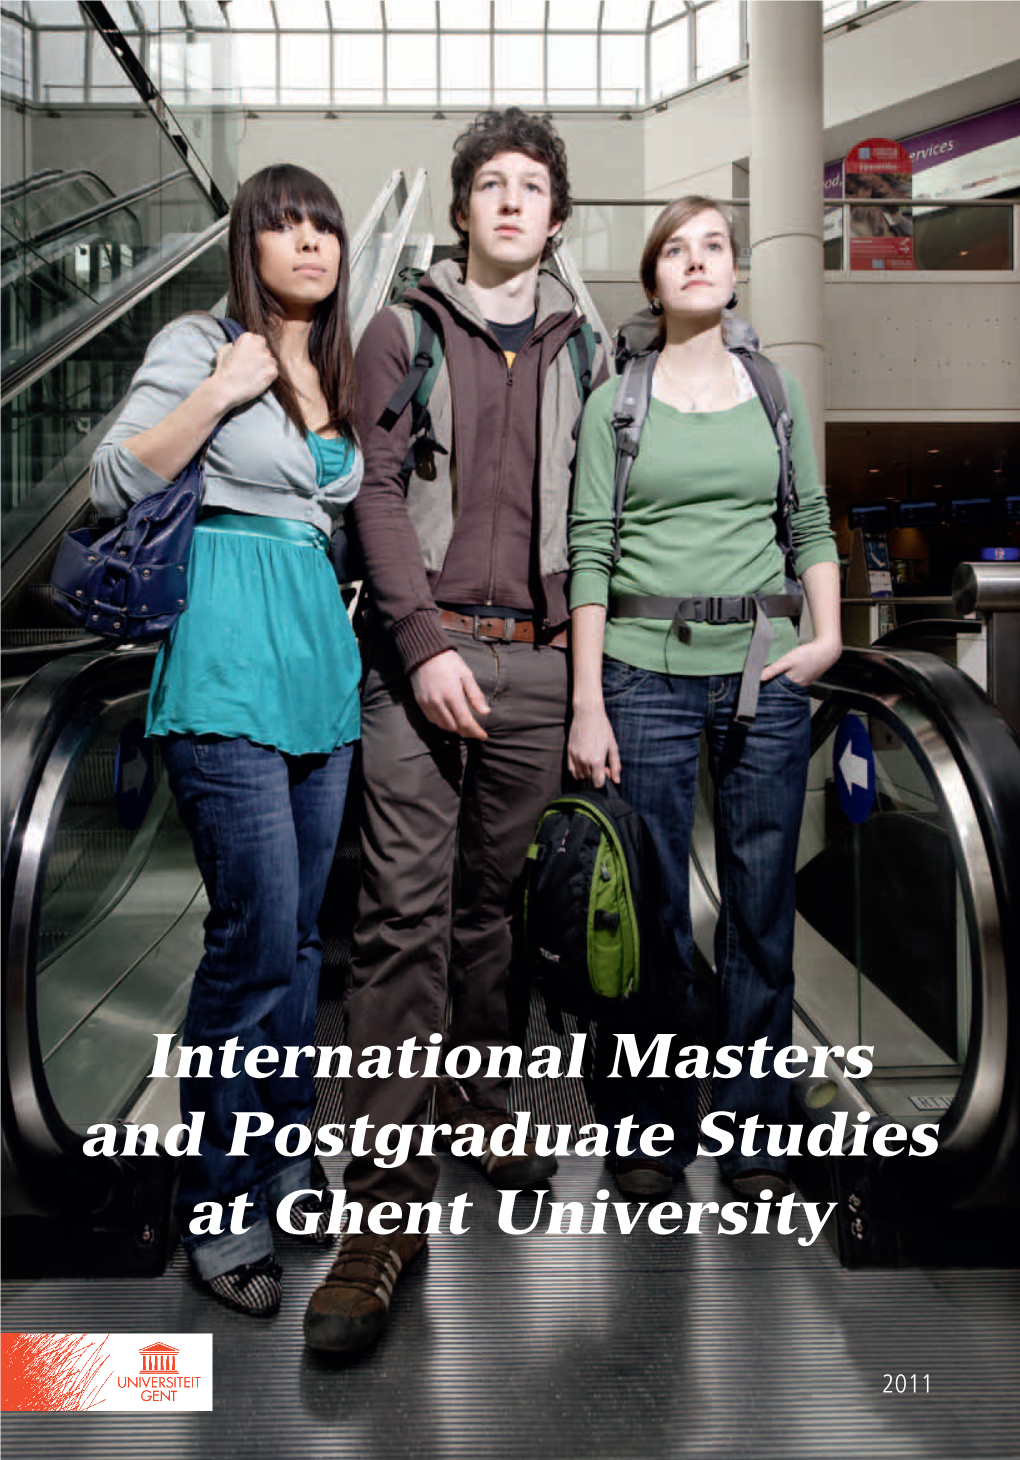 International Masters and Postgraduate Studies at Ghent University University Ghent at Studies Postgraduate and Masters International